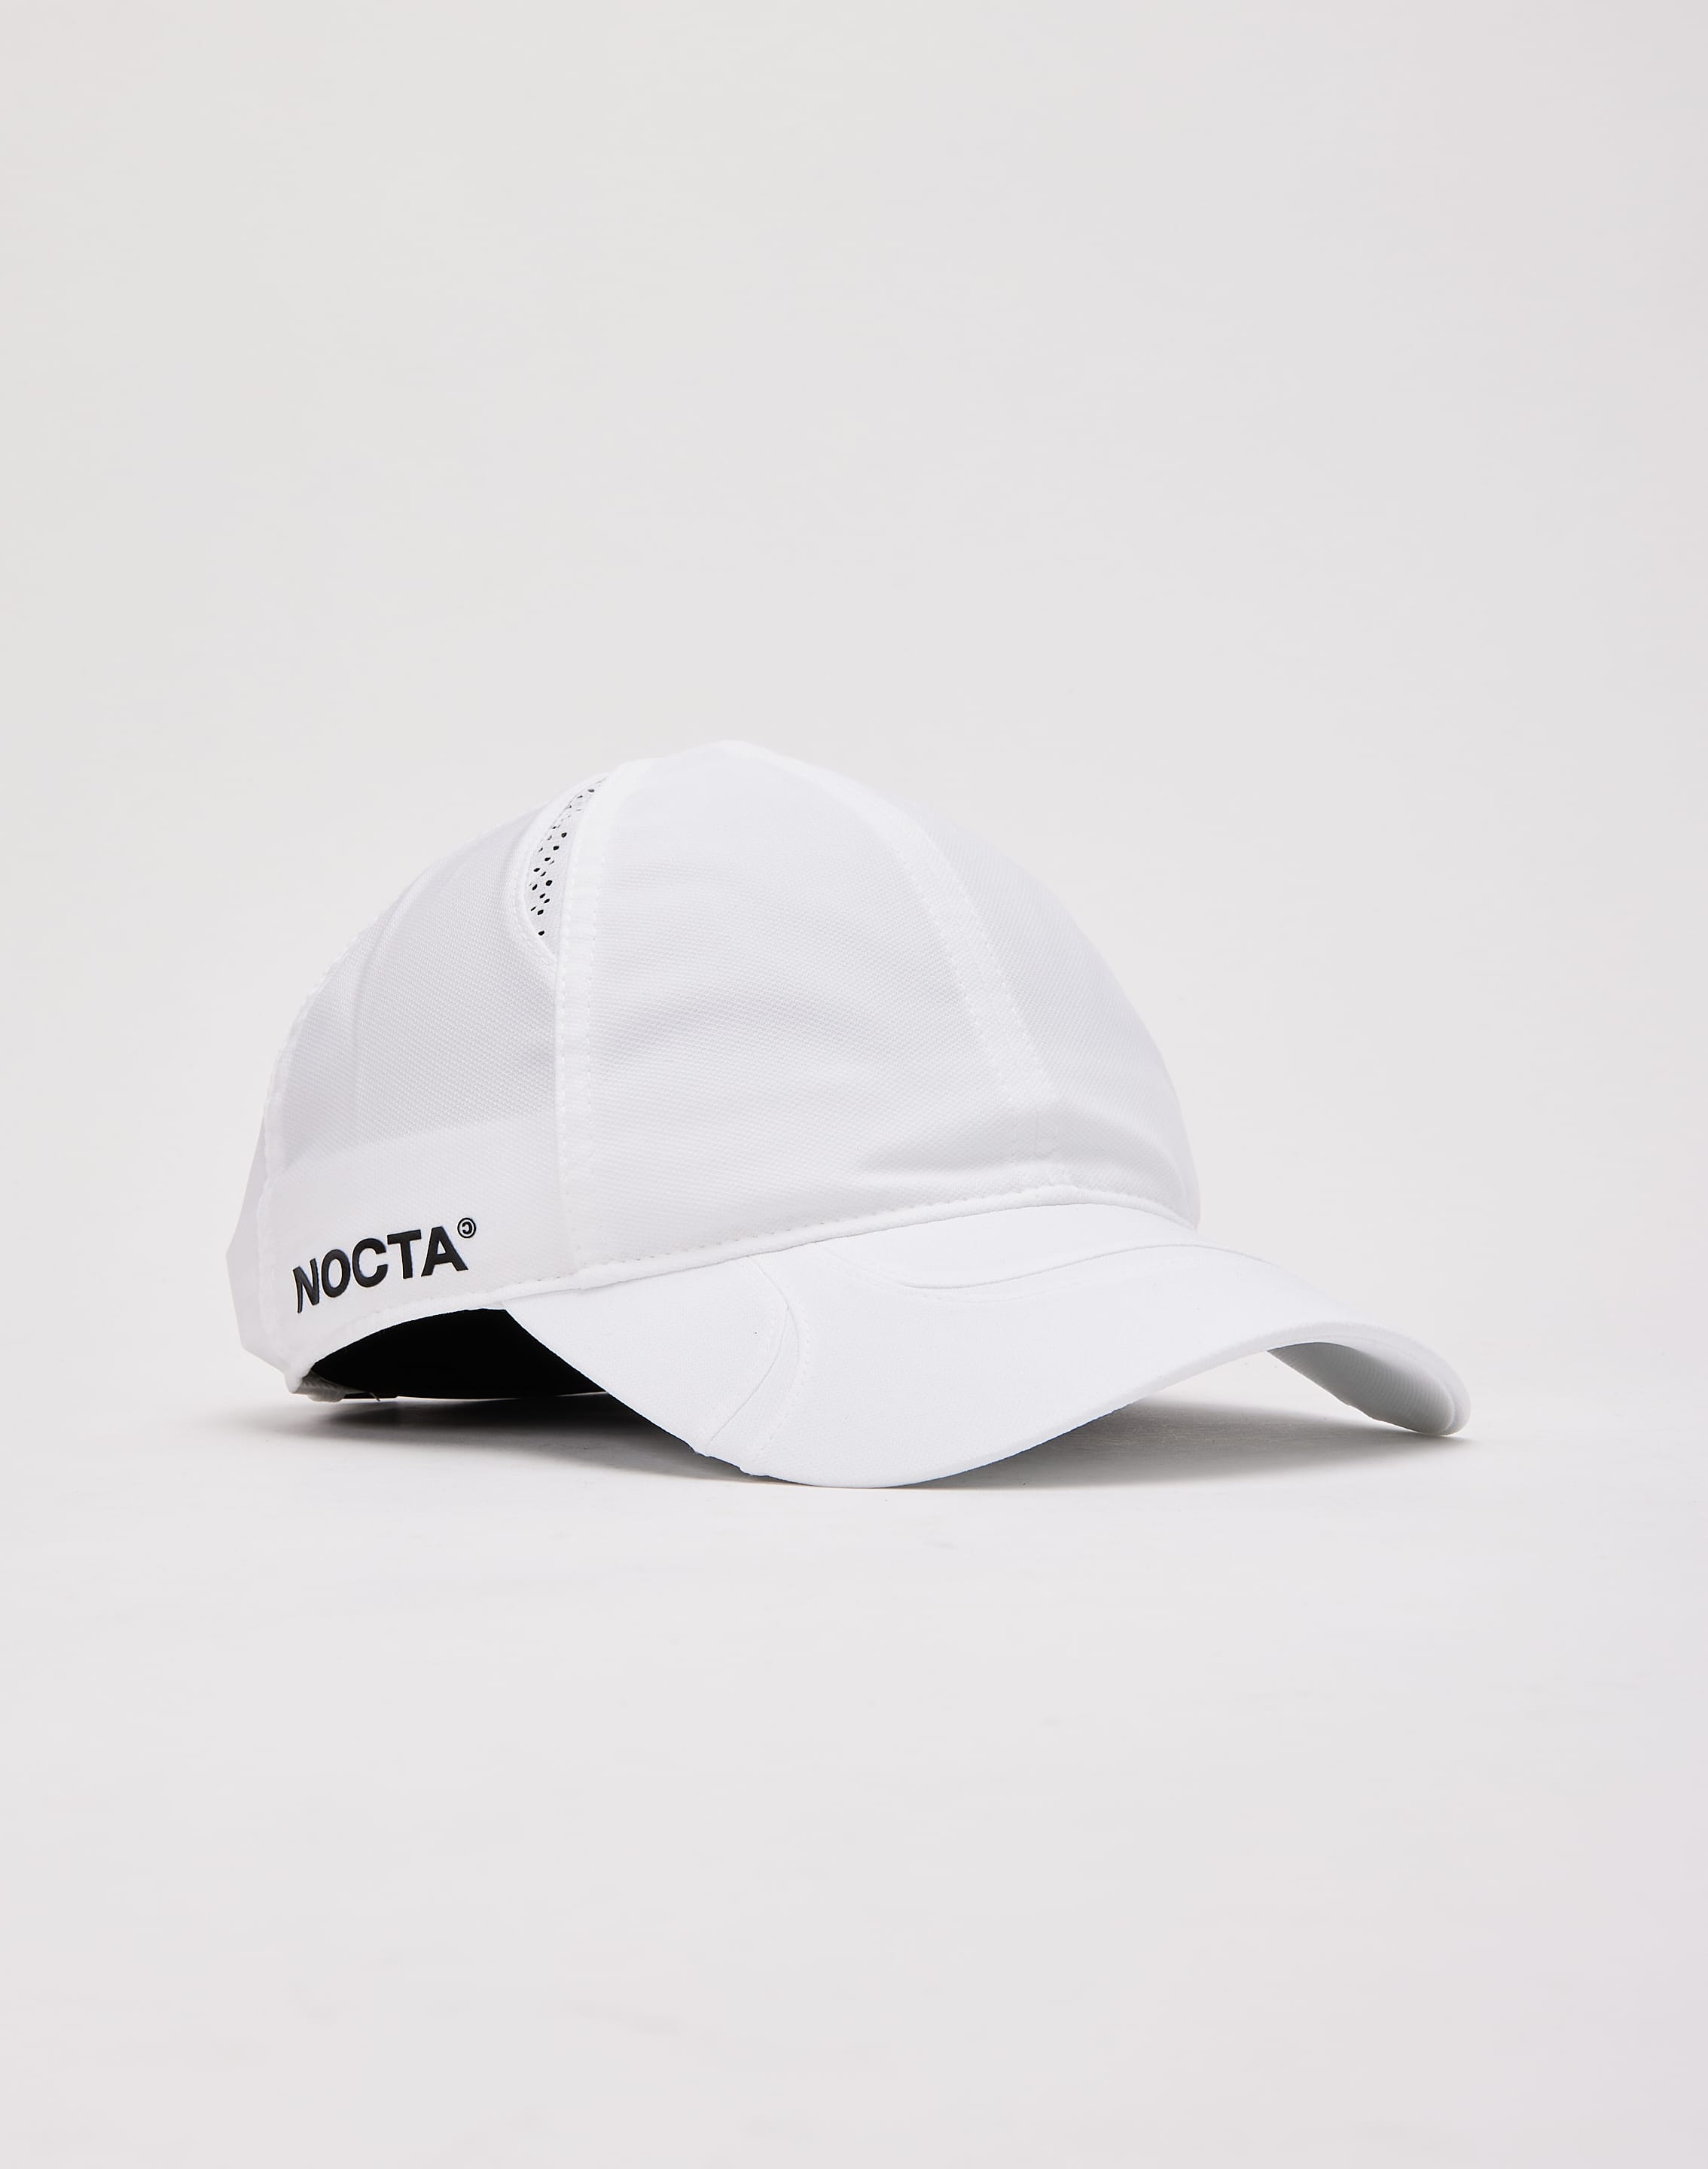 Nike NOCTA Club Cap